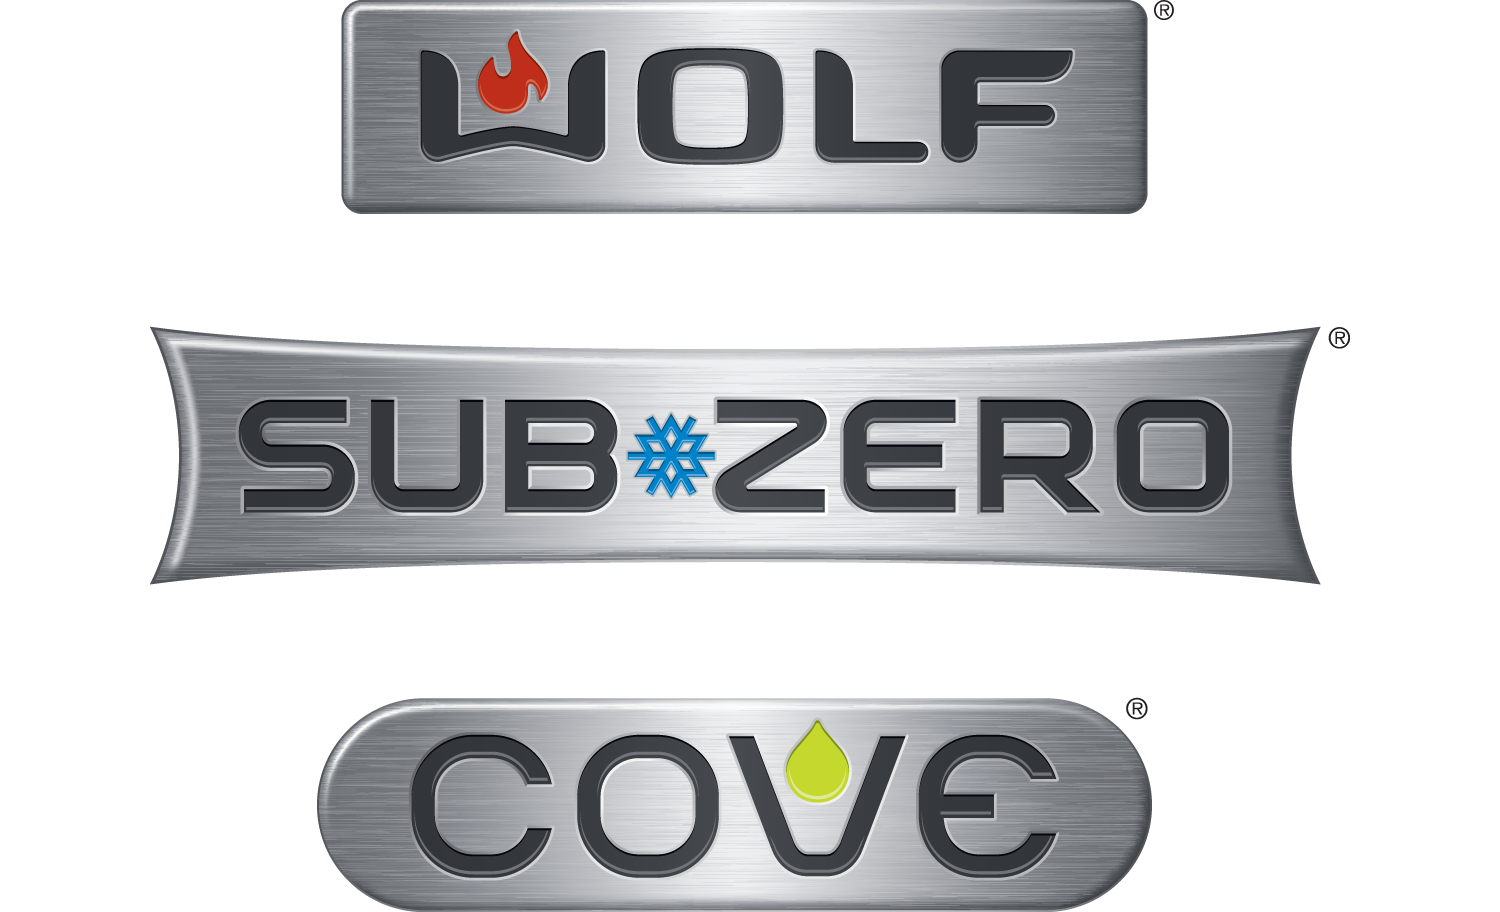 Subzero Wolf Cove